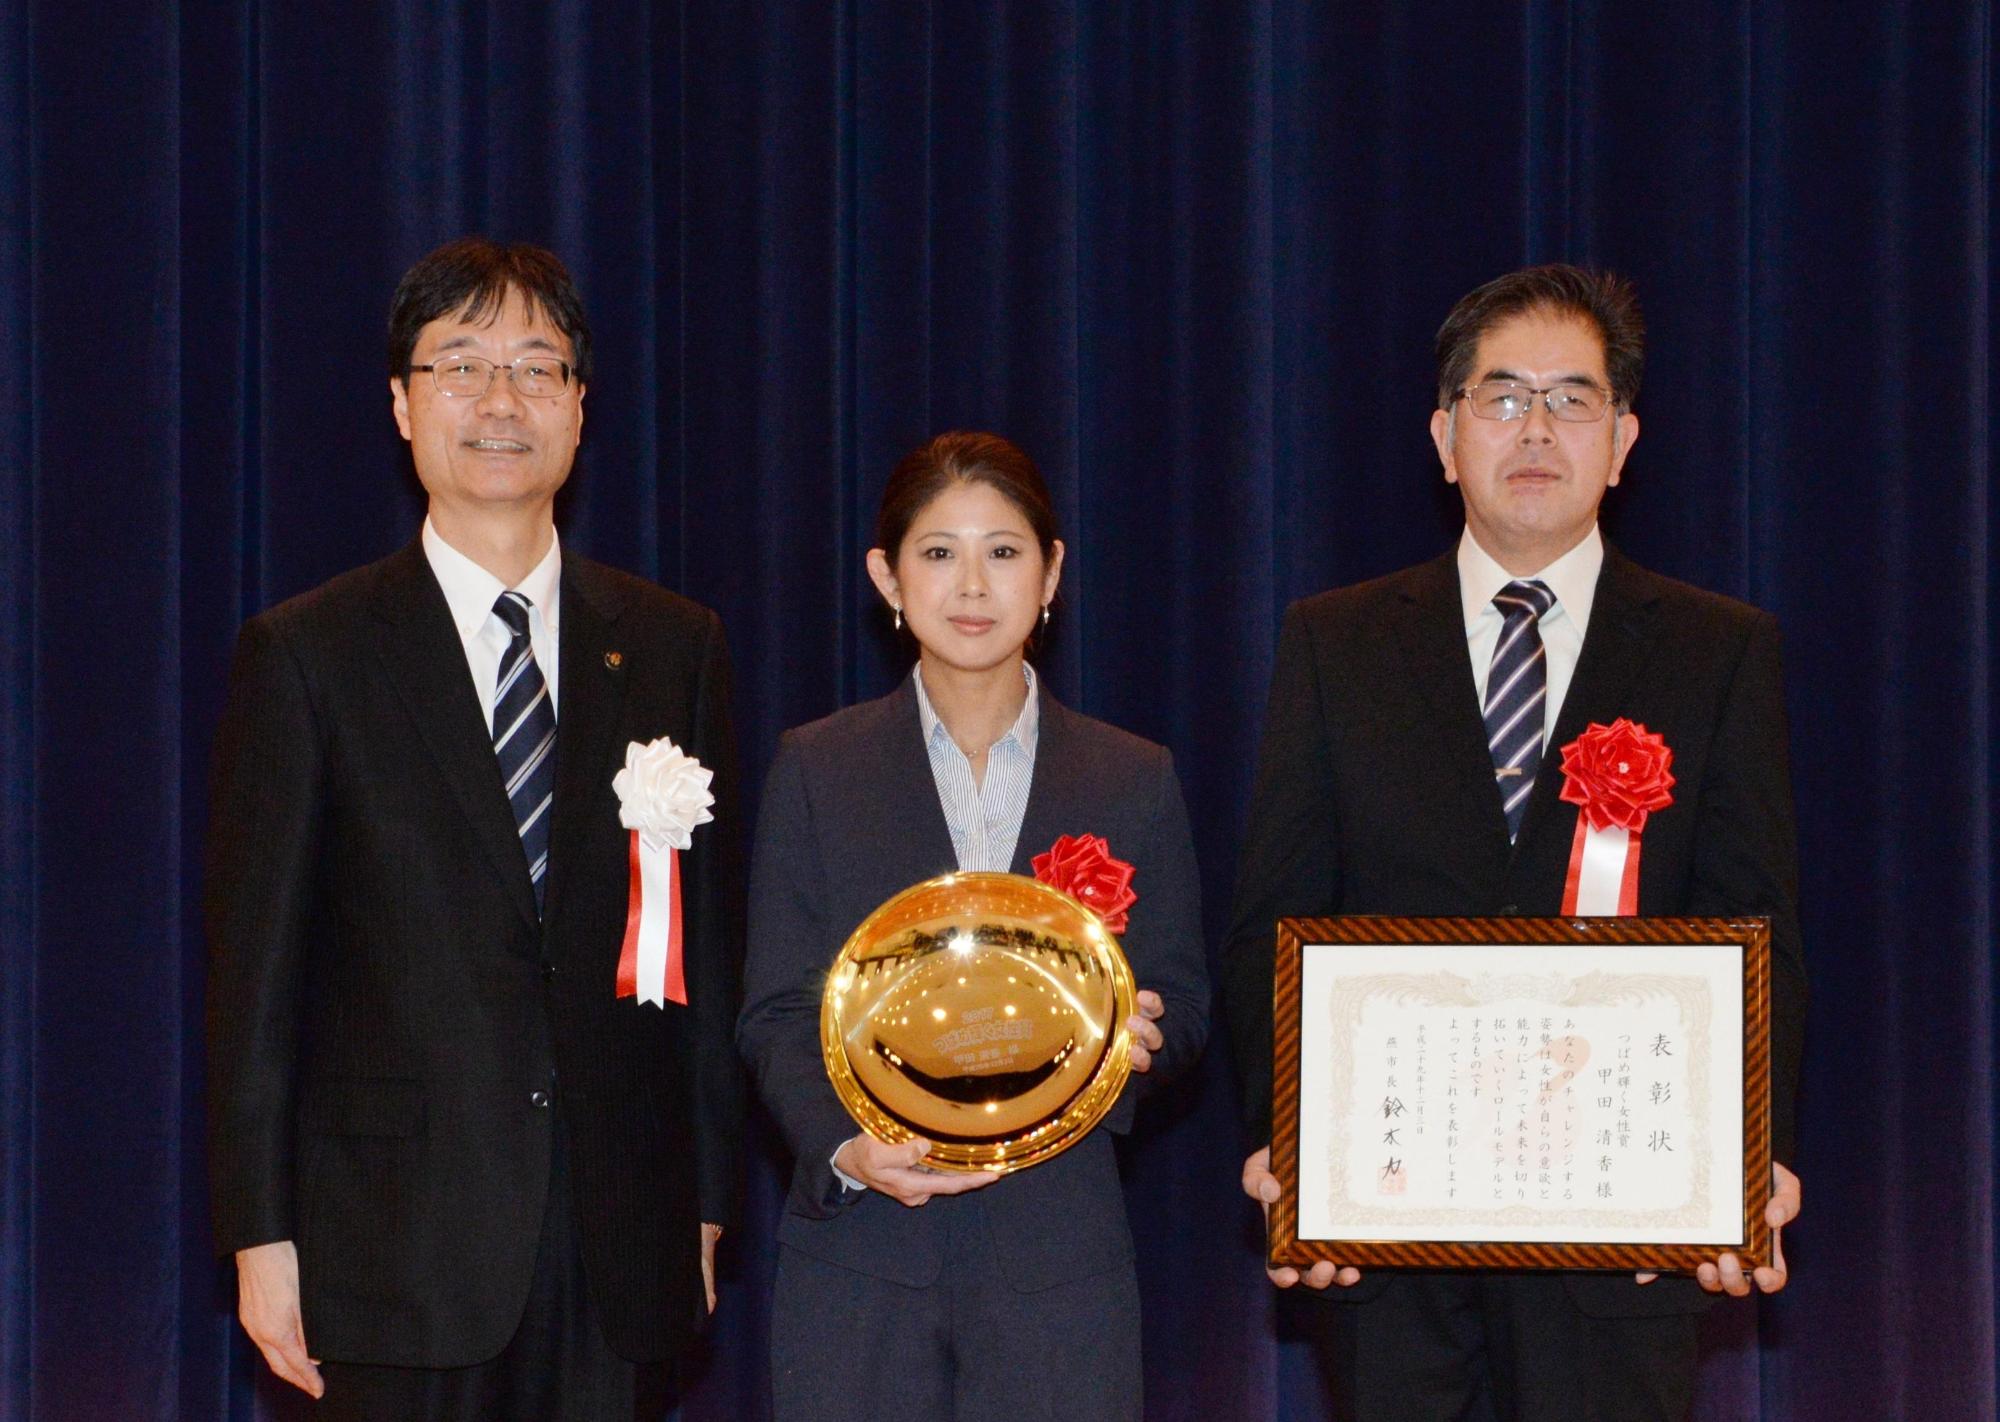 楯を持つつばめ輝く女性賞を受賞した女性と賞状を持つ男性と市長の写真